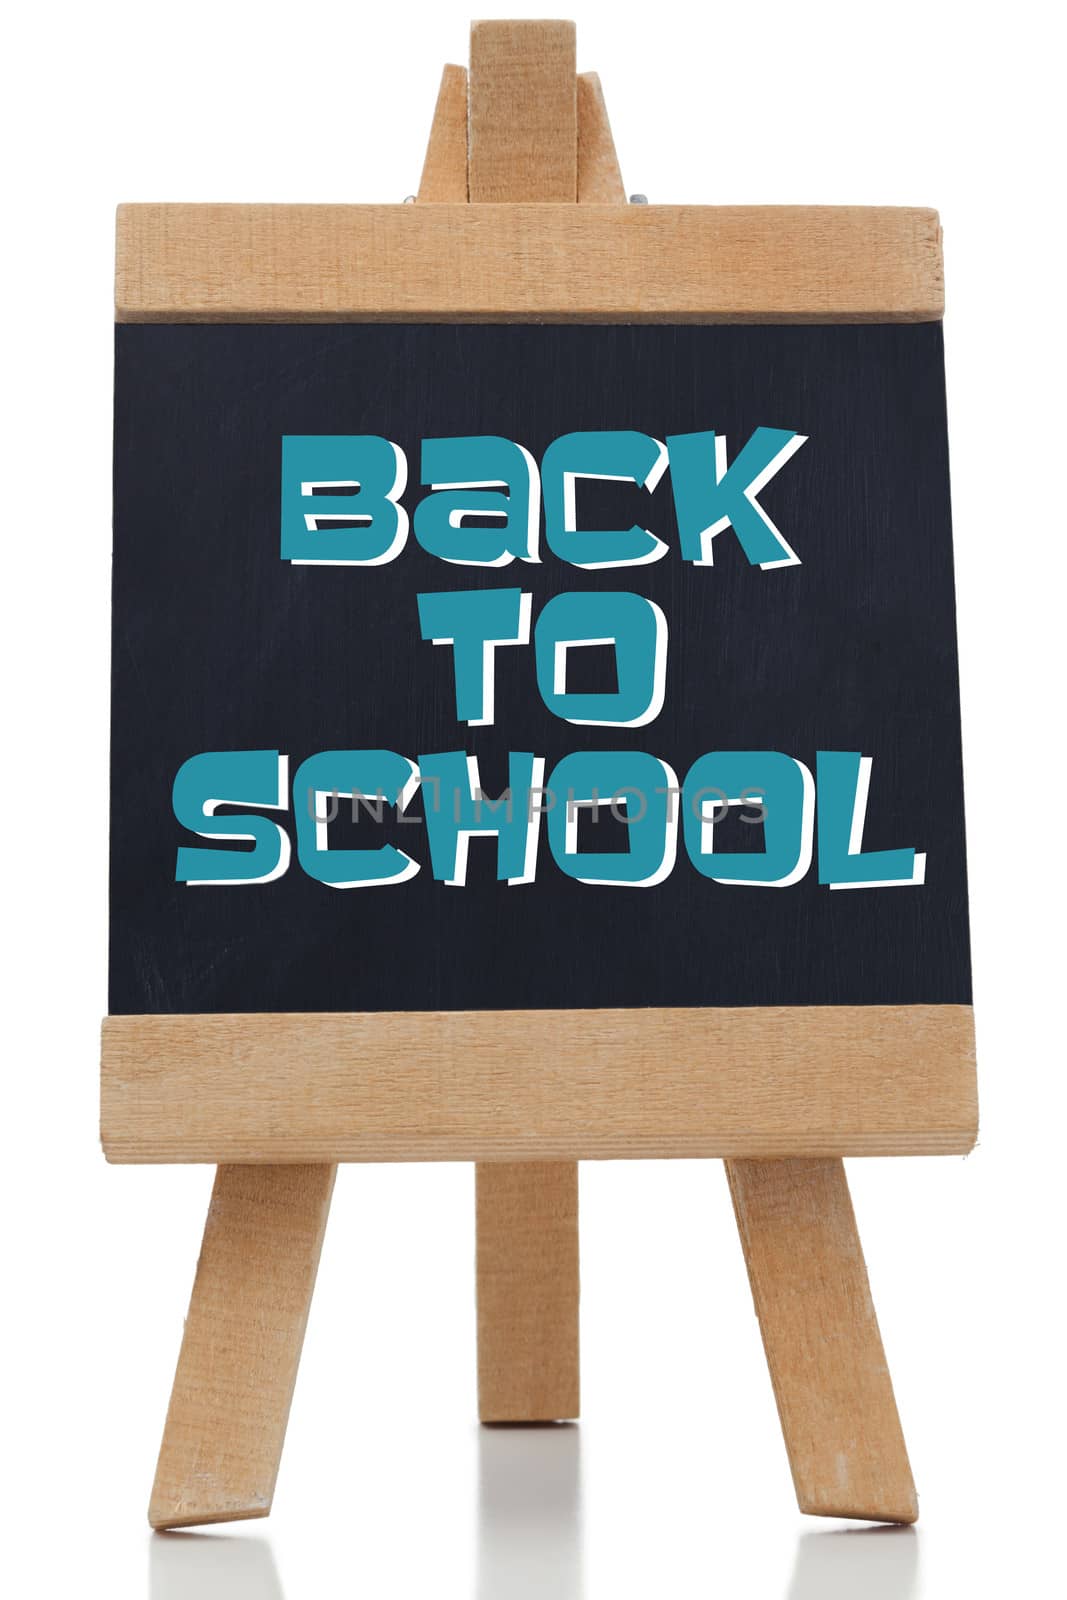 Back to school written in blue on chalkboard  by Wavebreakmedia